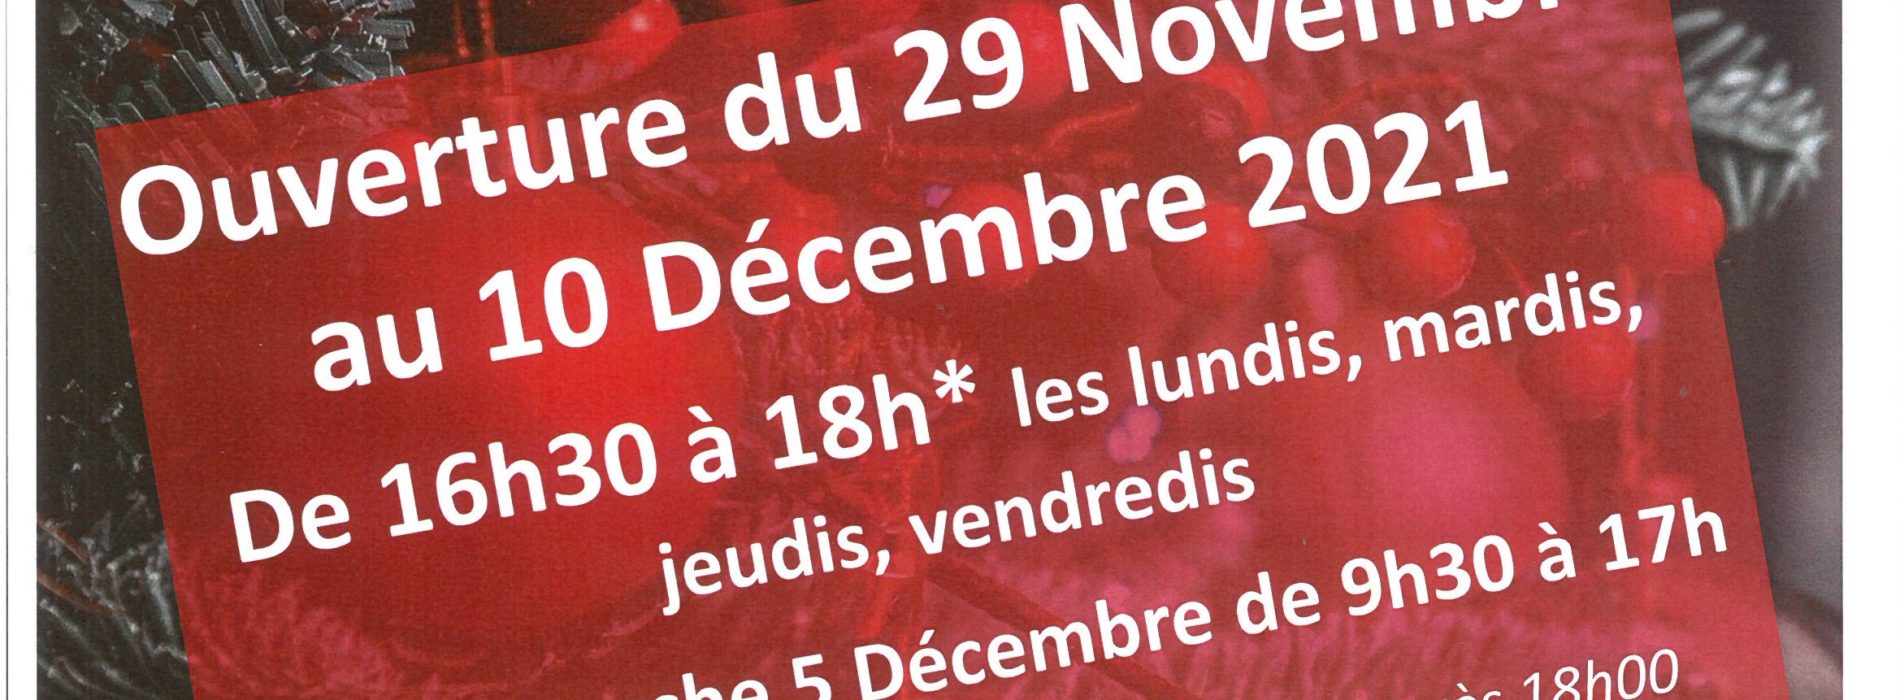 OUVERTURE DE LA BOUTIQUE EPHEMERE DU 29 NOVEMBRE AU 10 DECEMBRE “15 RUE PRINCIPALE”